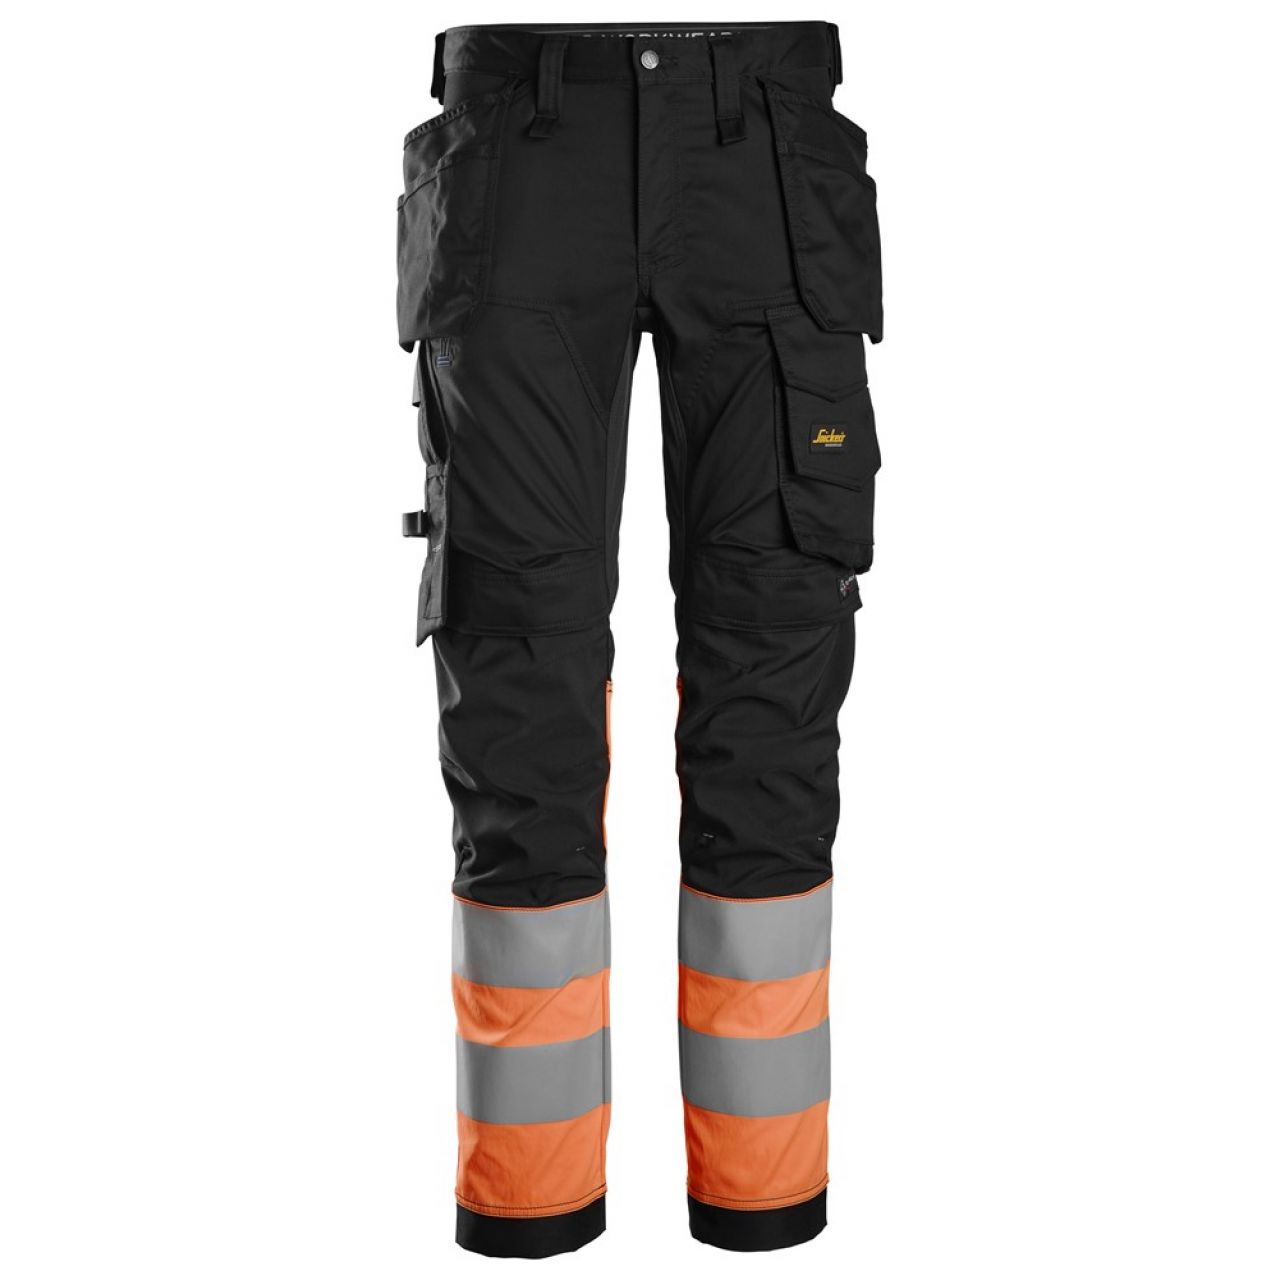 6234 Pantalones largos de trabajo elásticos de alta visibilidad clase 1 con bolsillos flotantes negro-naranja talla 146